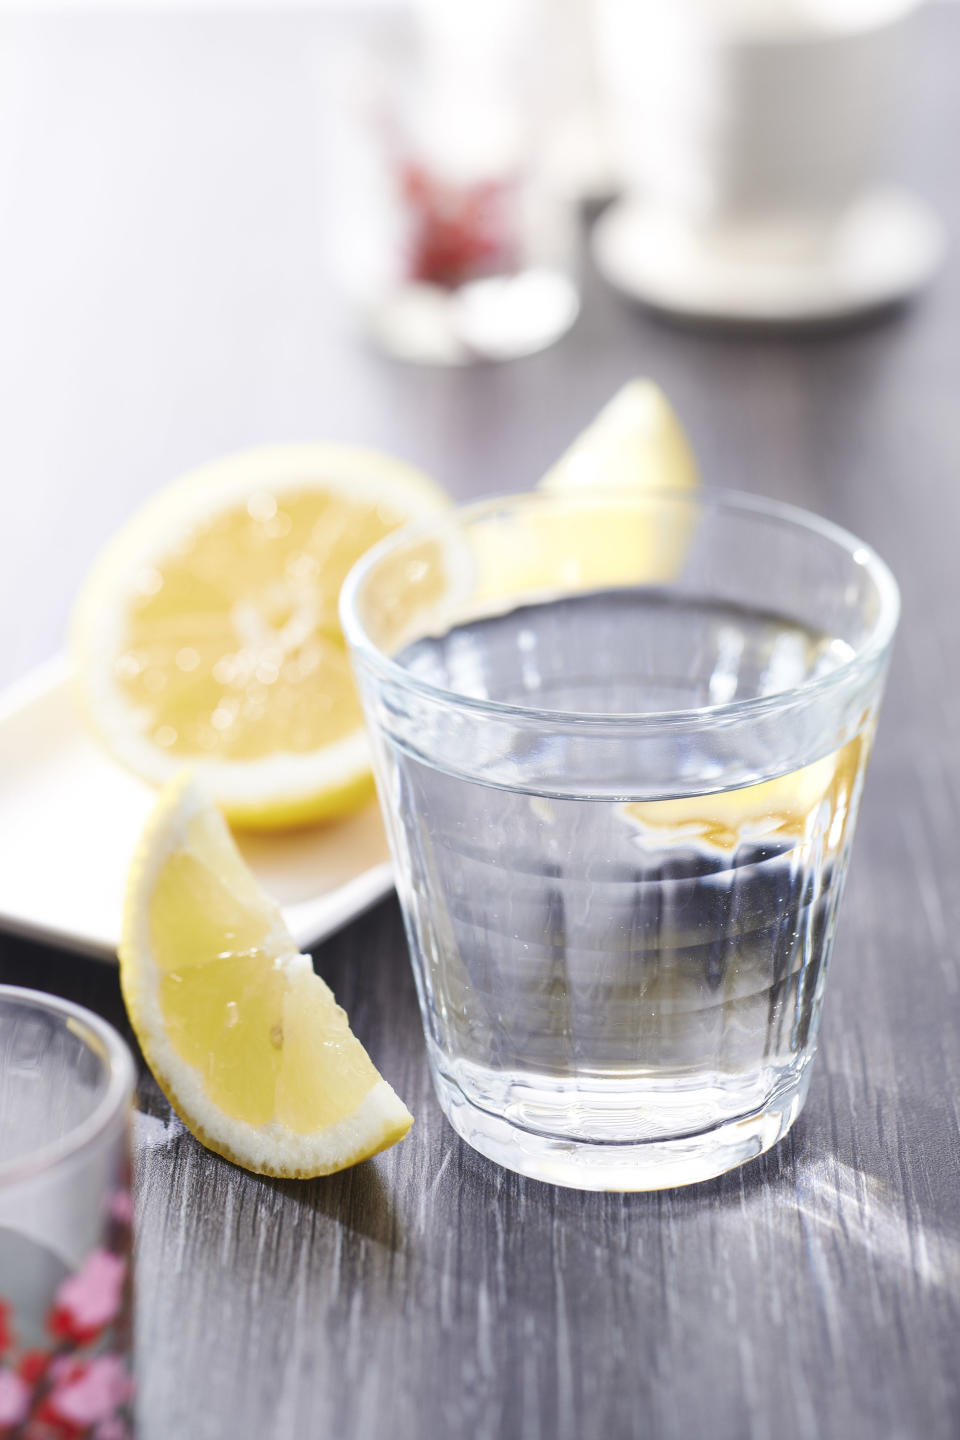 52) Lemon Water